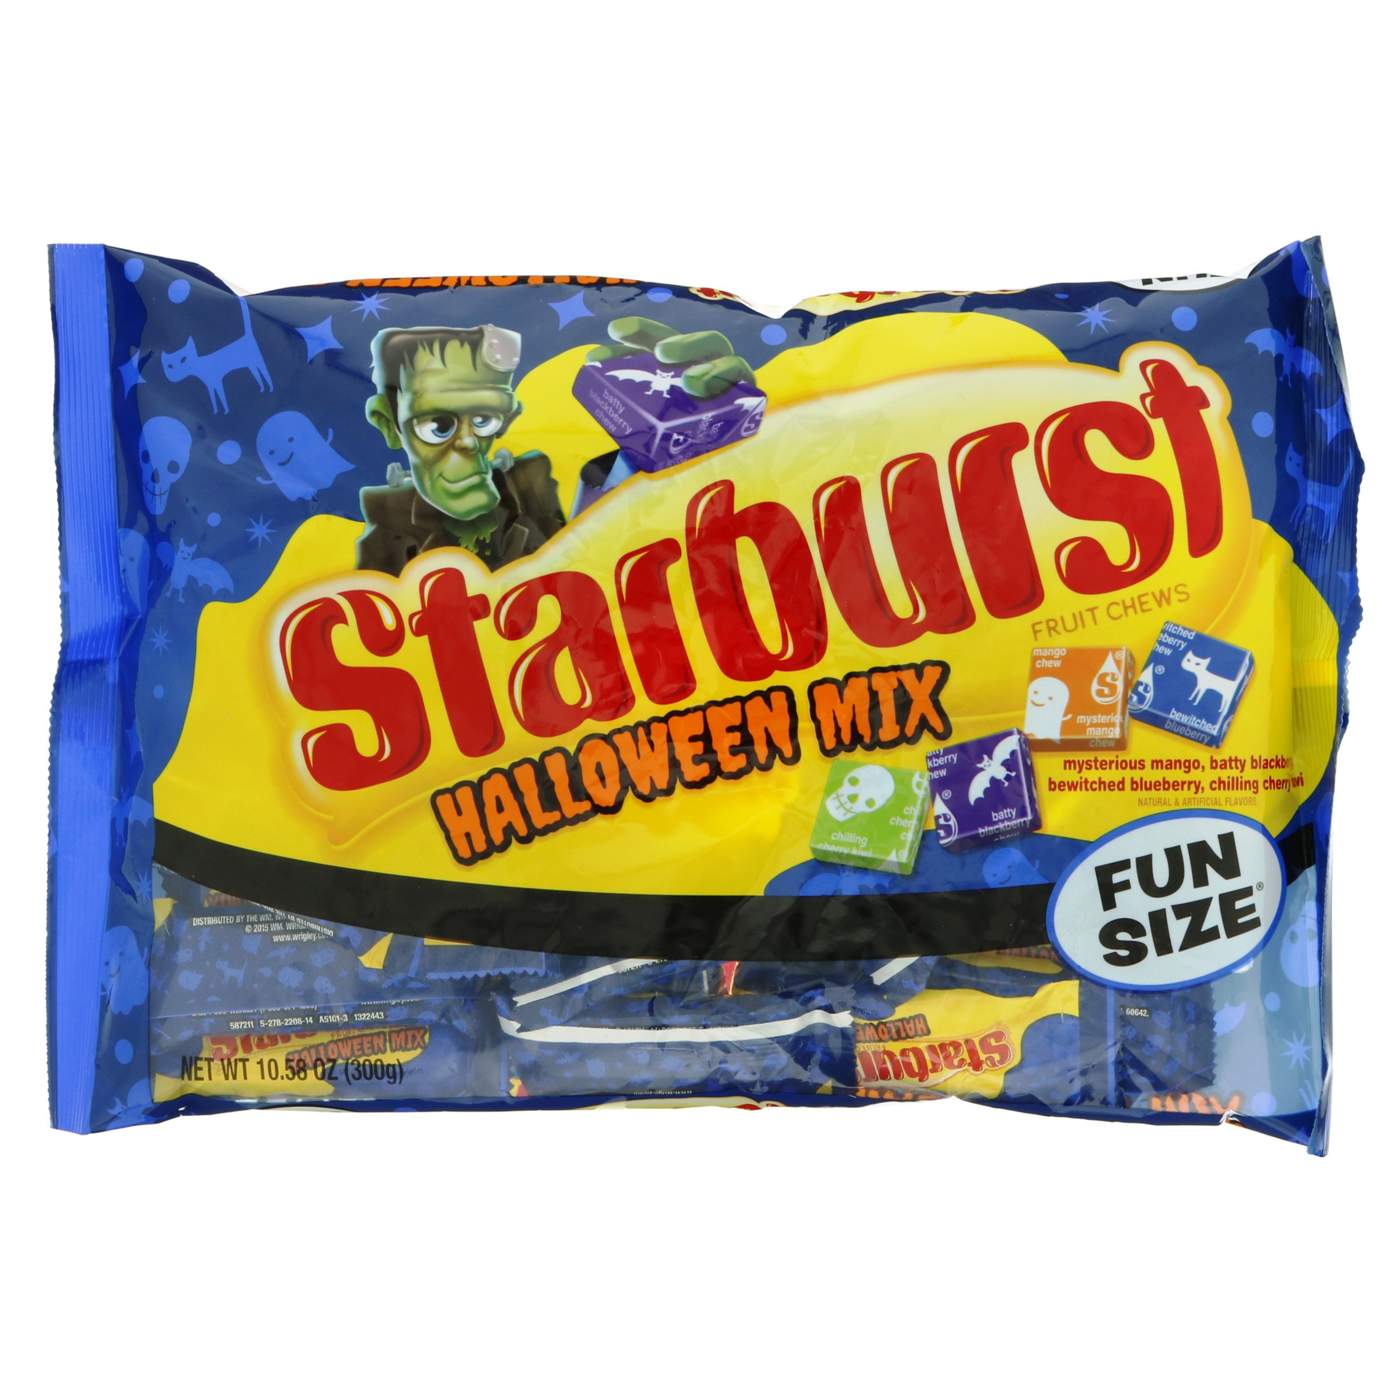 Starburst Halloween Mix Fun Size; image 1 of 2